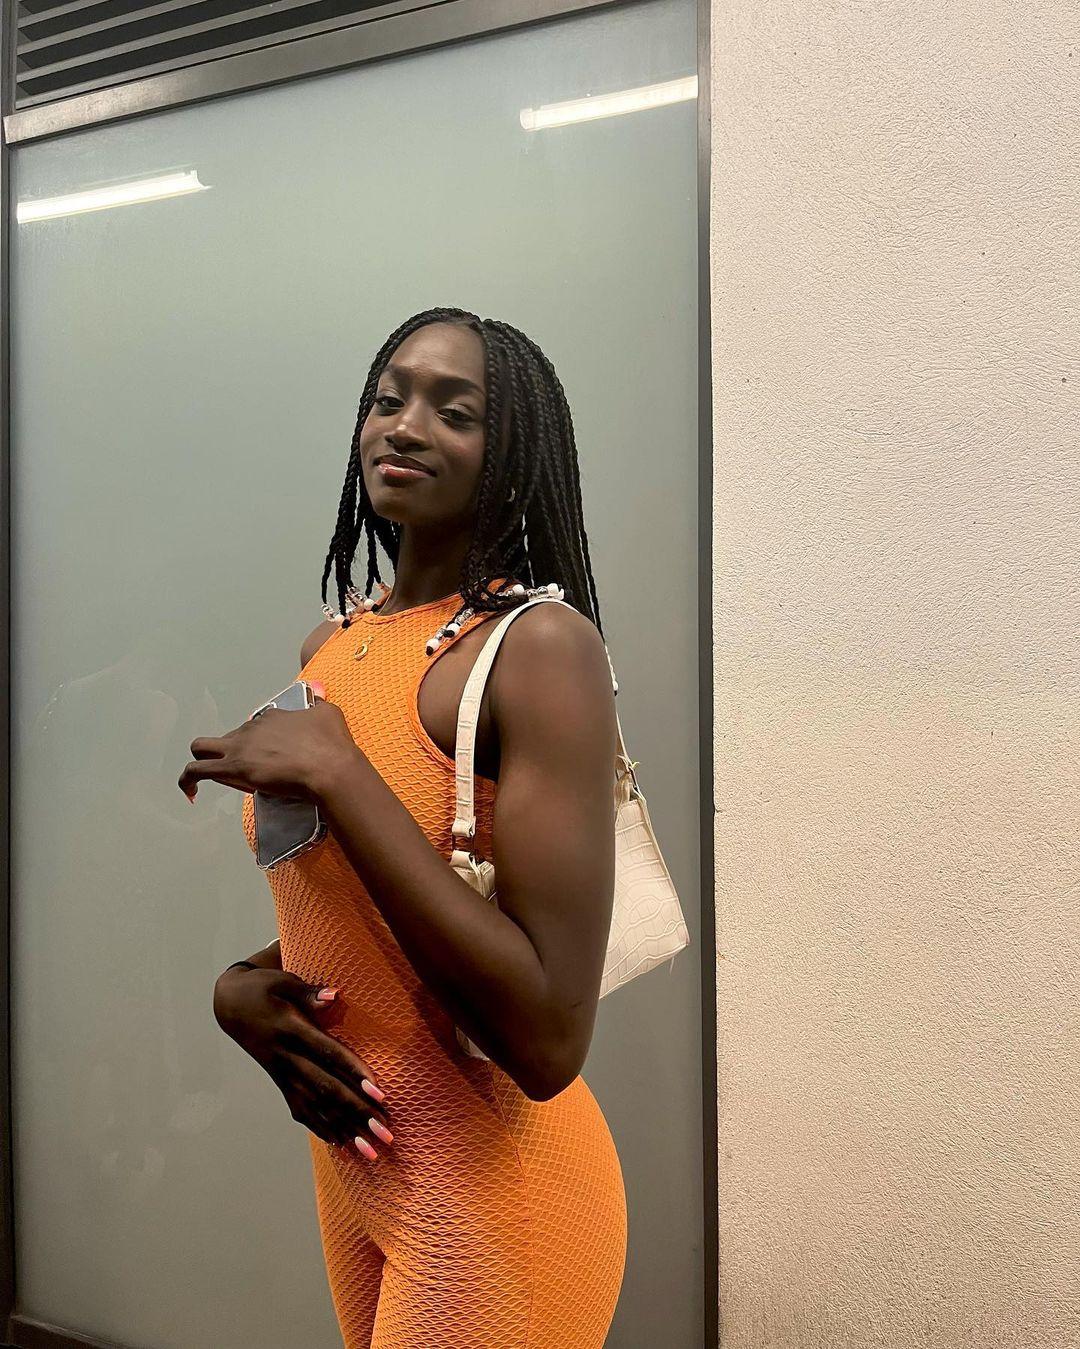 Mayé Touré Instagram Post Influencer Campaign